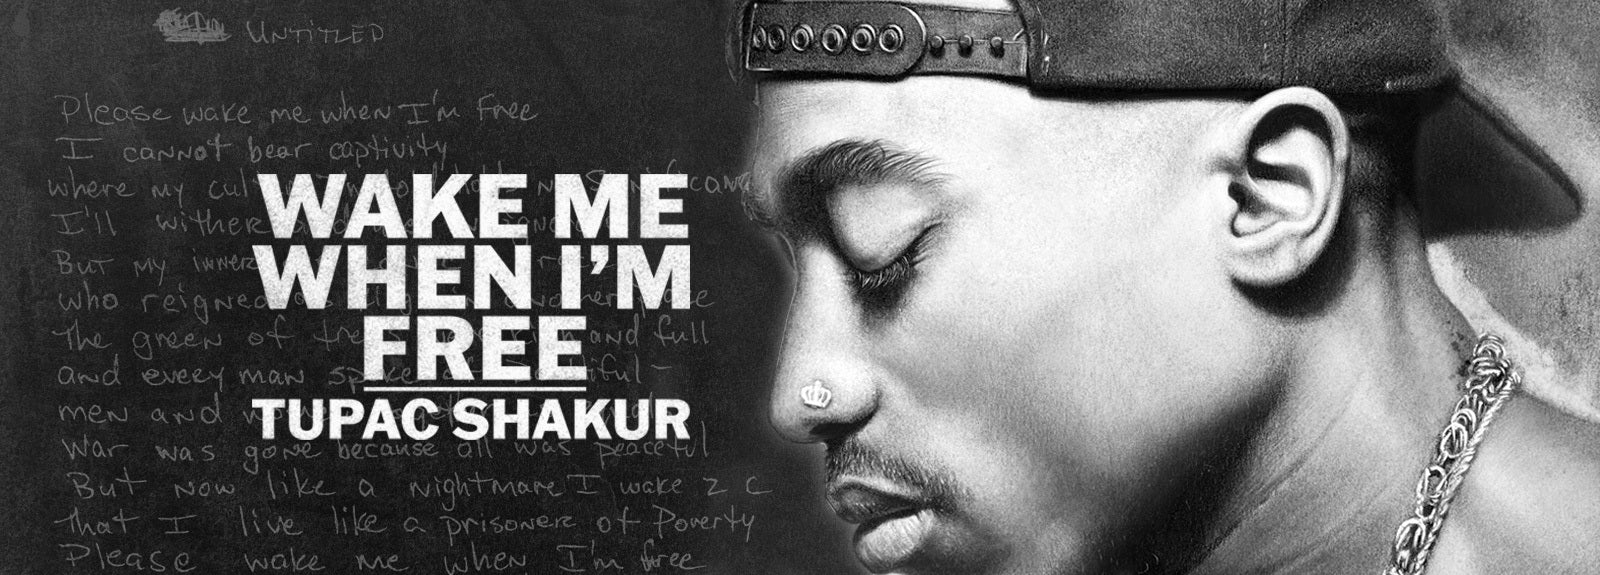 Tupac Shakur Wake Me When I'm Free